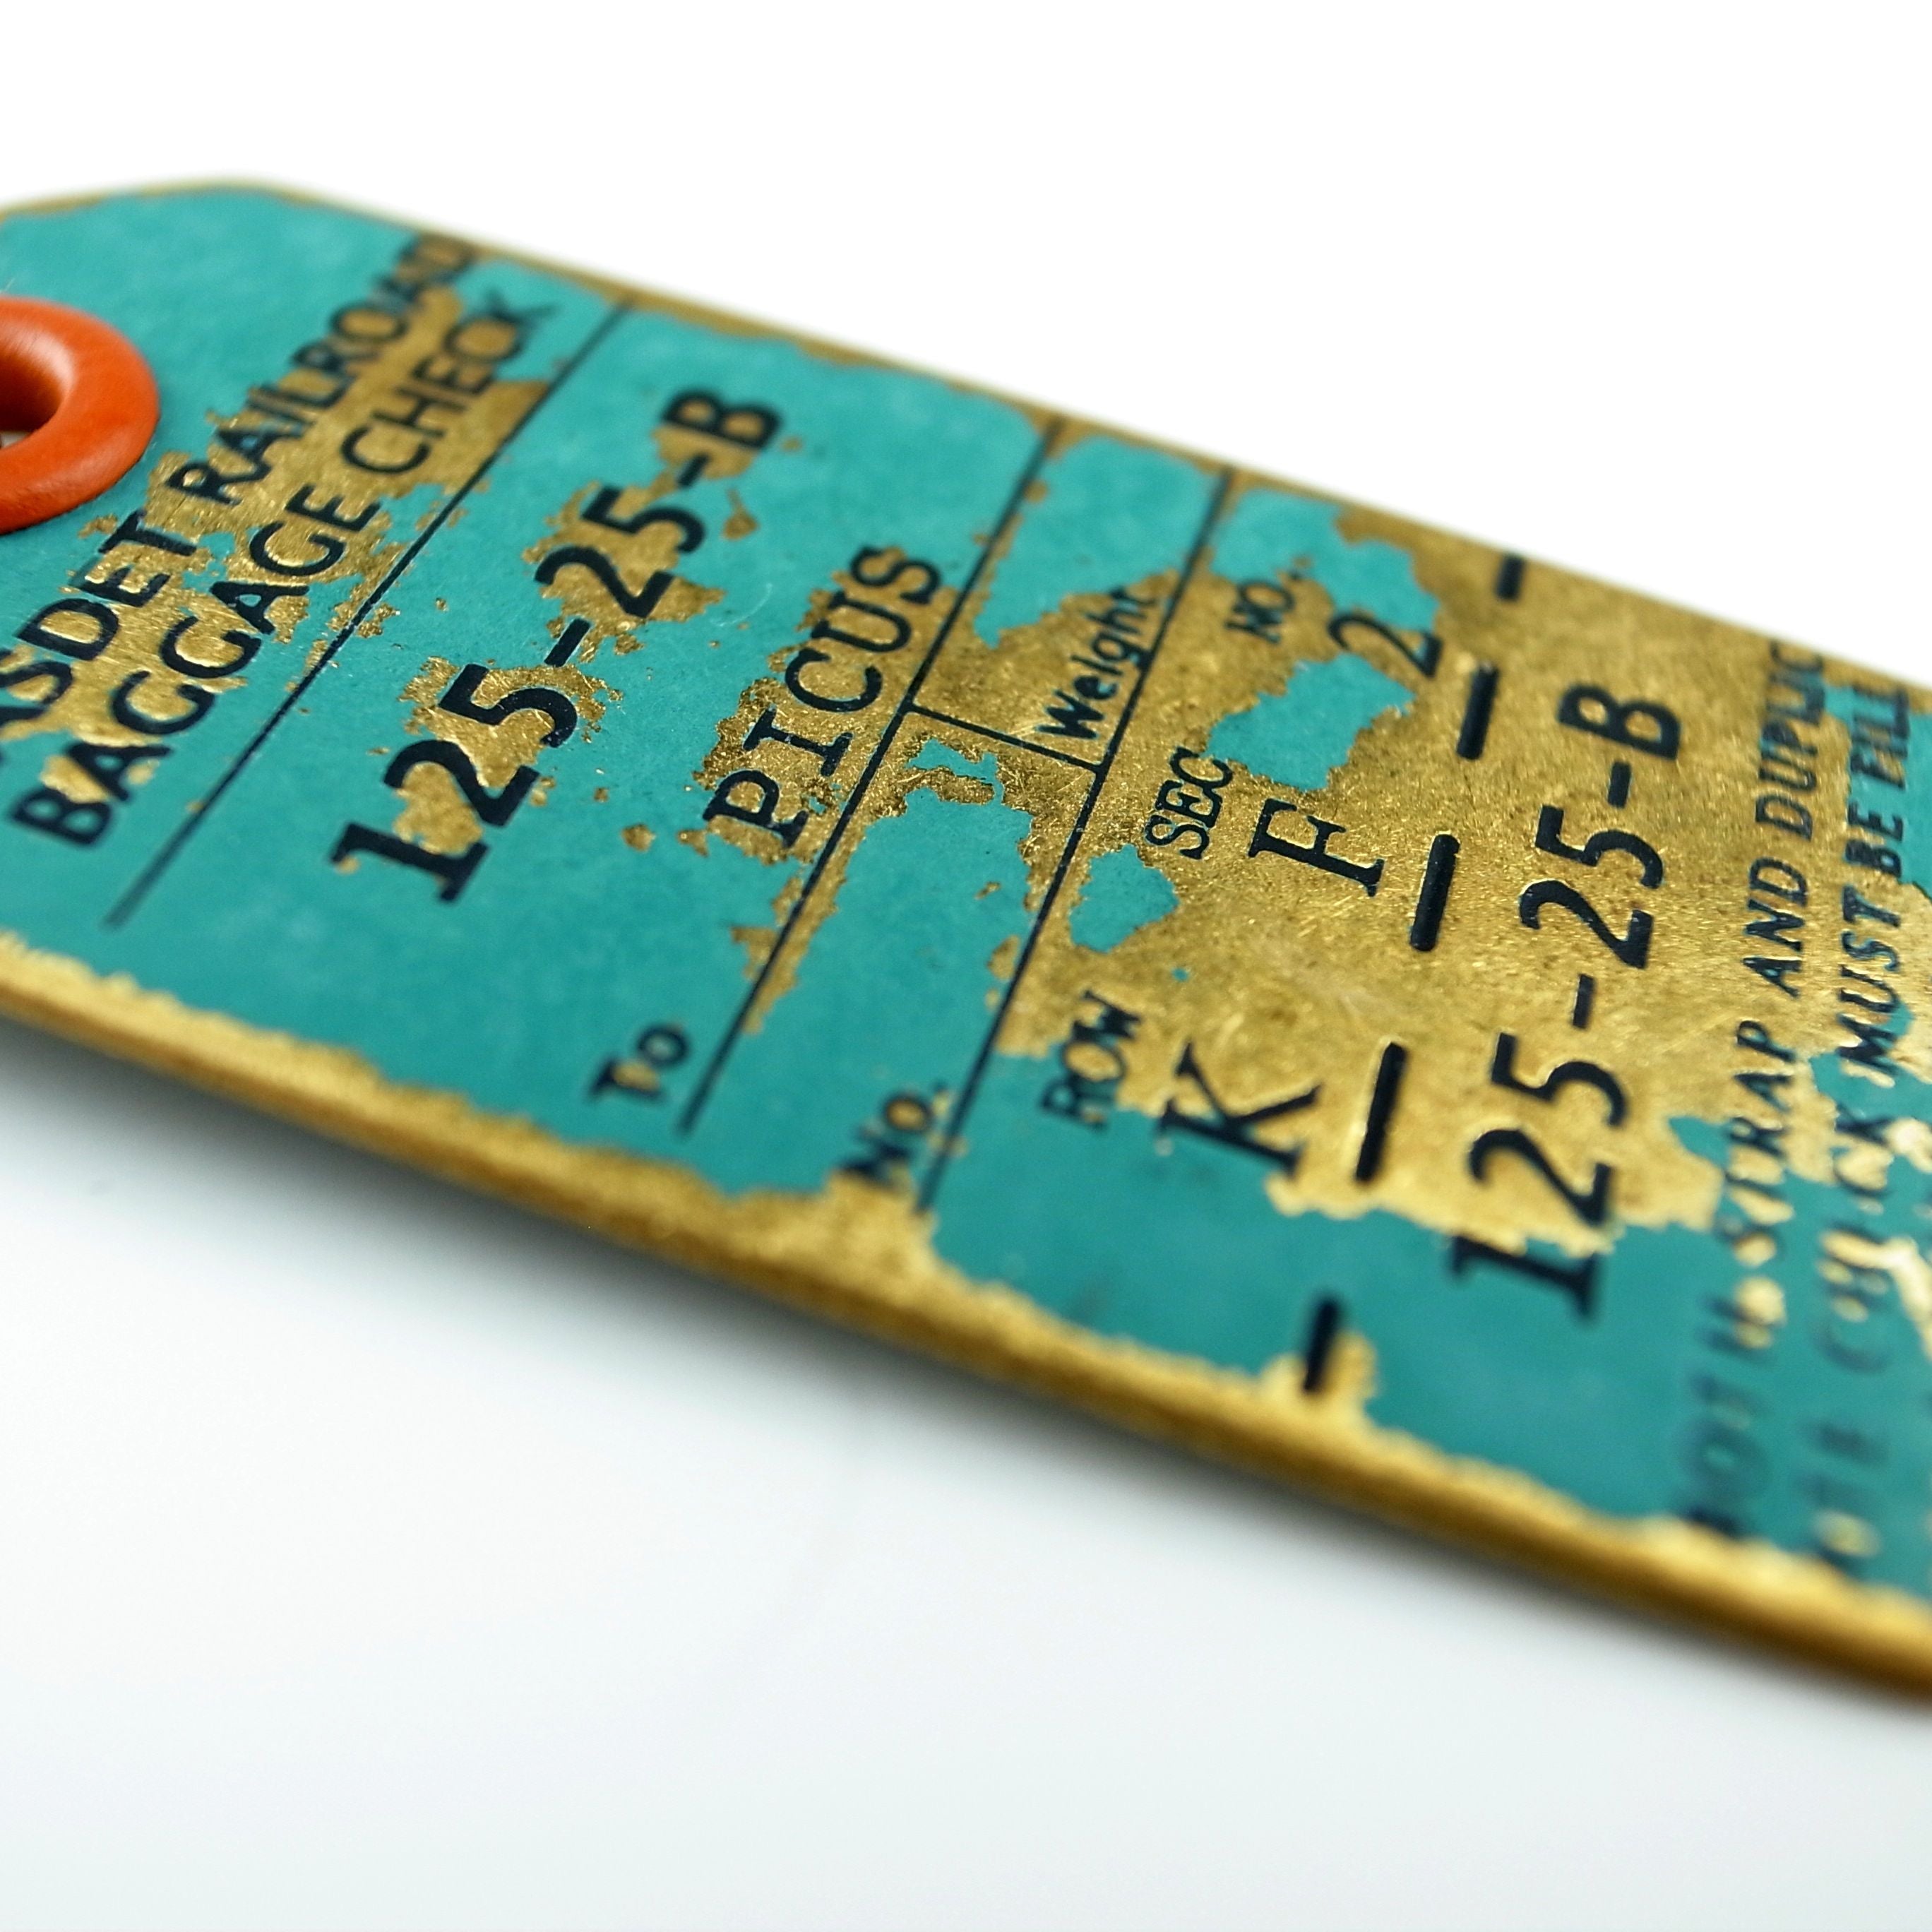 PICUS 日本黃銅精品 復古鐵道車票銅製鎖匙扣 特殊銅色 LUGGAGE TAG KEY-HOLDER COLOOR TYPE